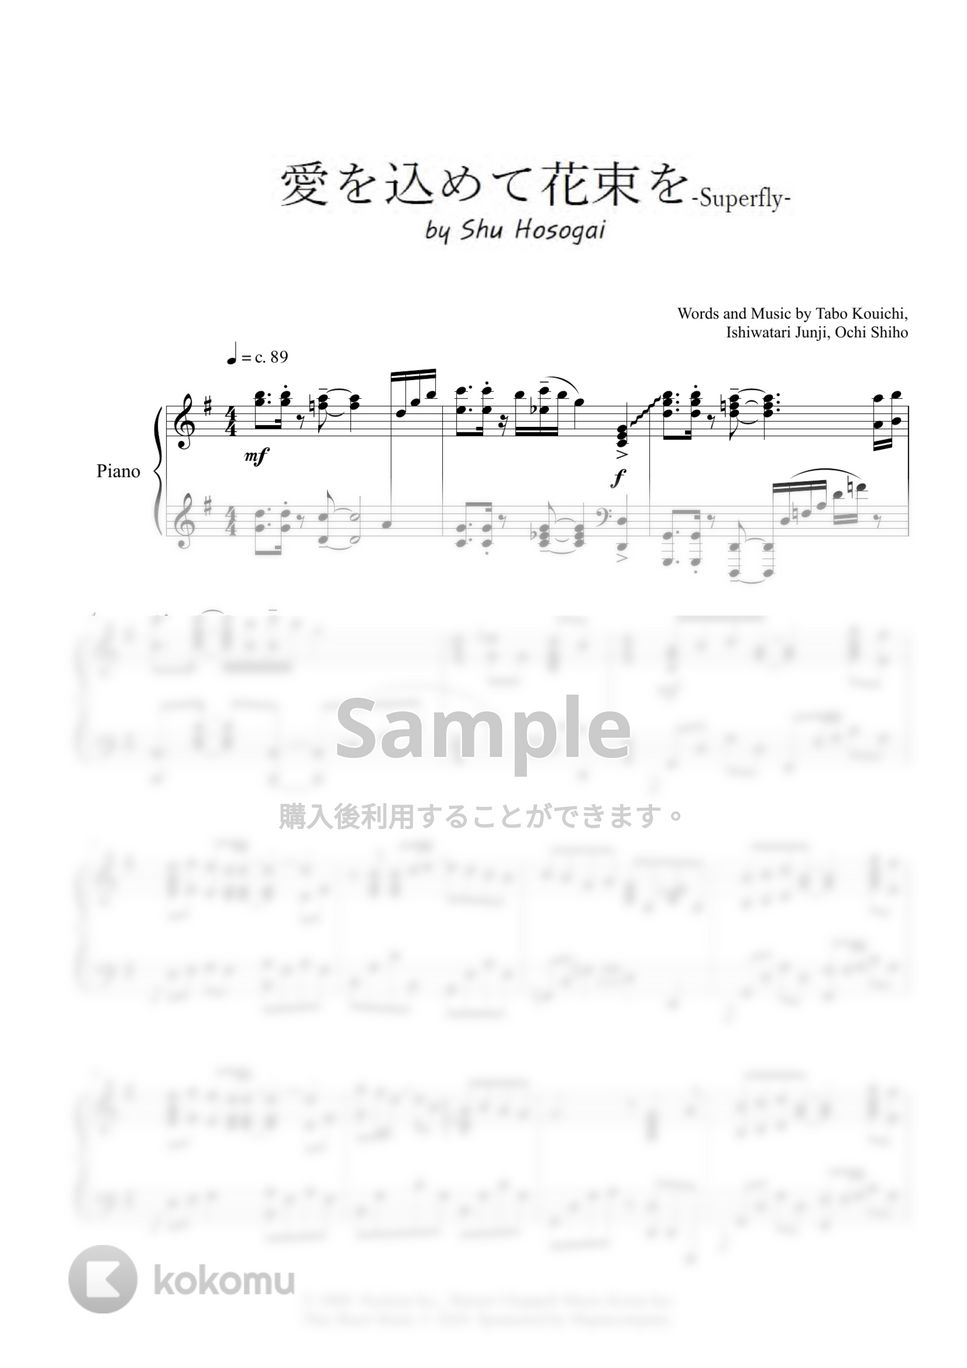 Superfly - 愛を込めて花束を (ピアノソロ / 上級) by 細貝 柊